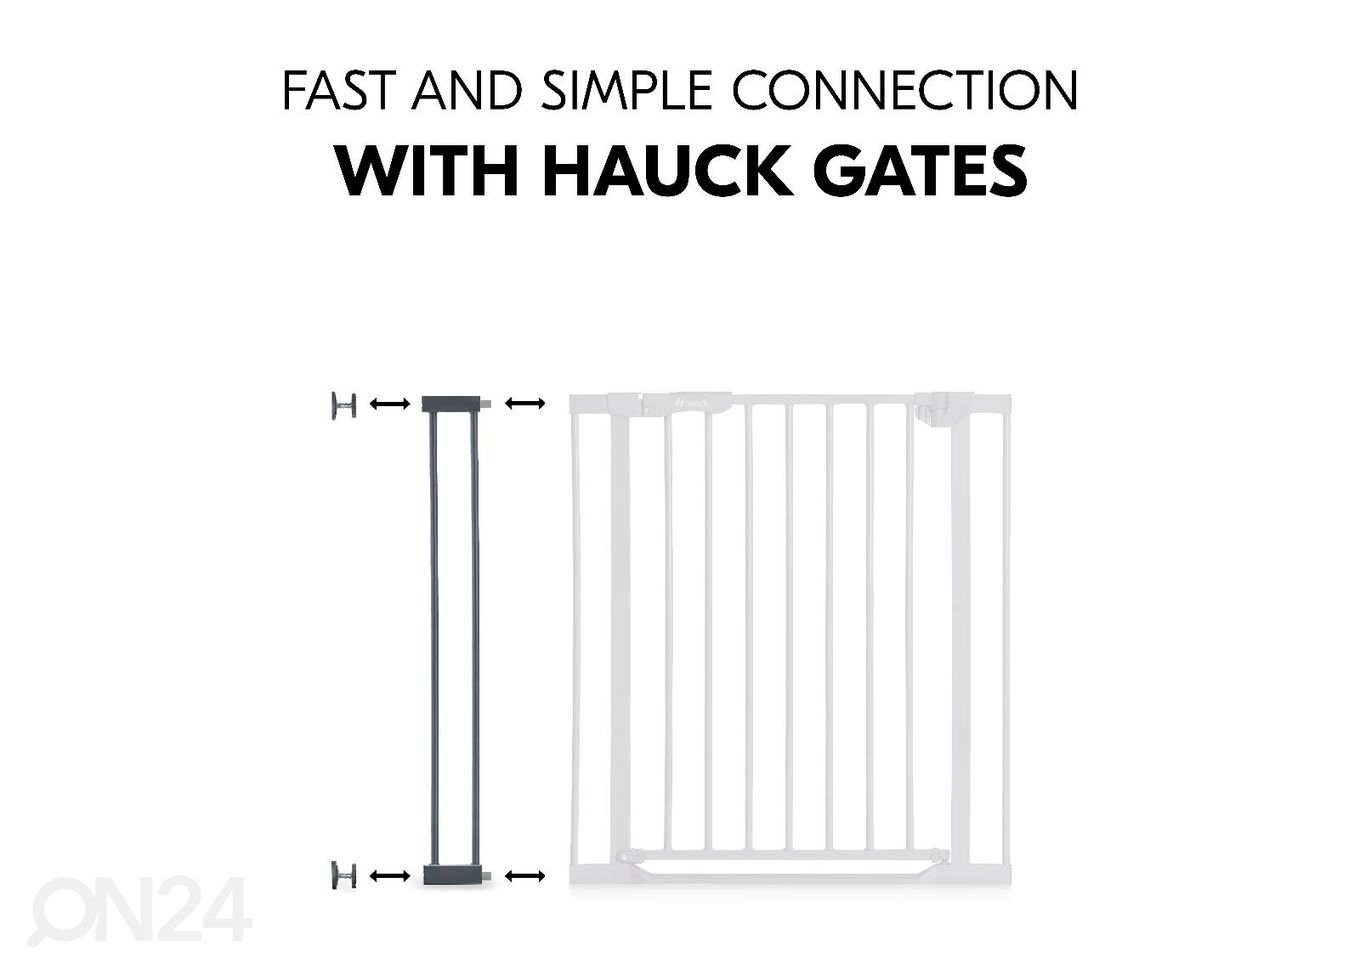 Расширение калитки безопасности 9 cm Hauck Select тёмно-серый увеличить